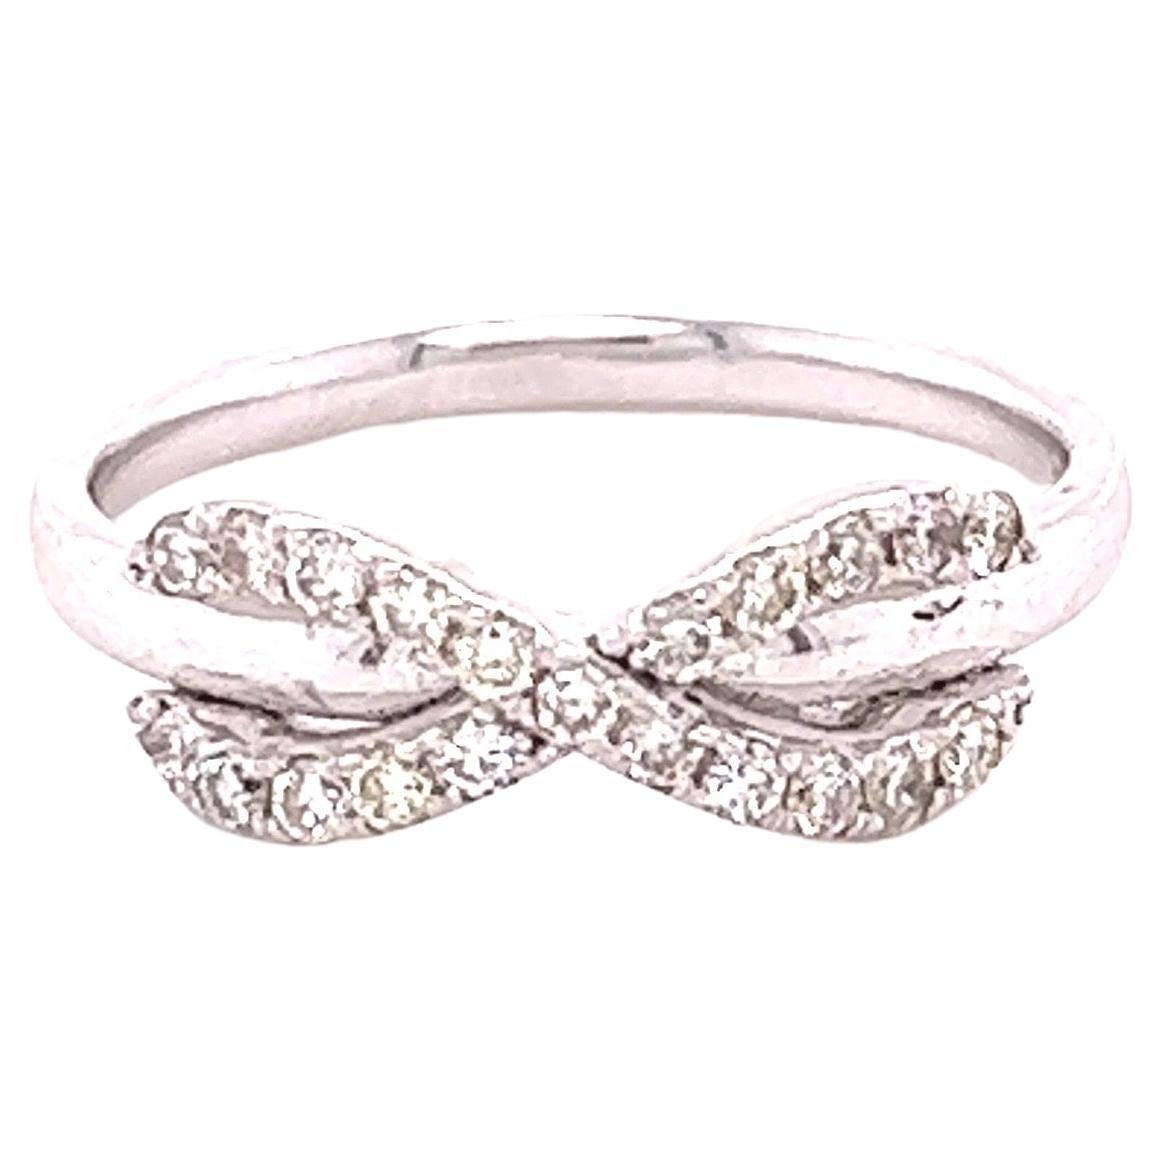 0.29 Carat Diamond 14 Karat White Gold Ring For Sale